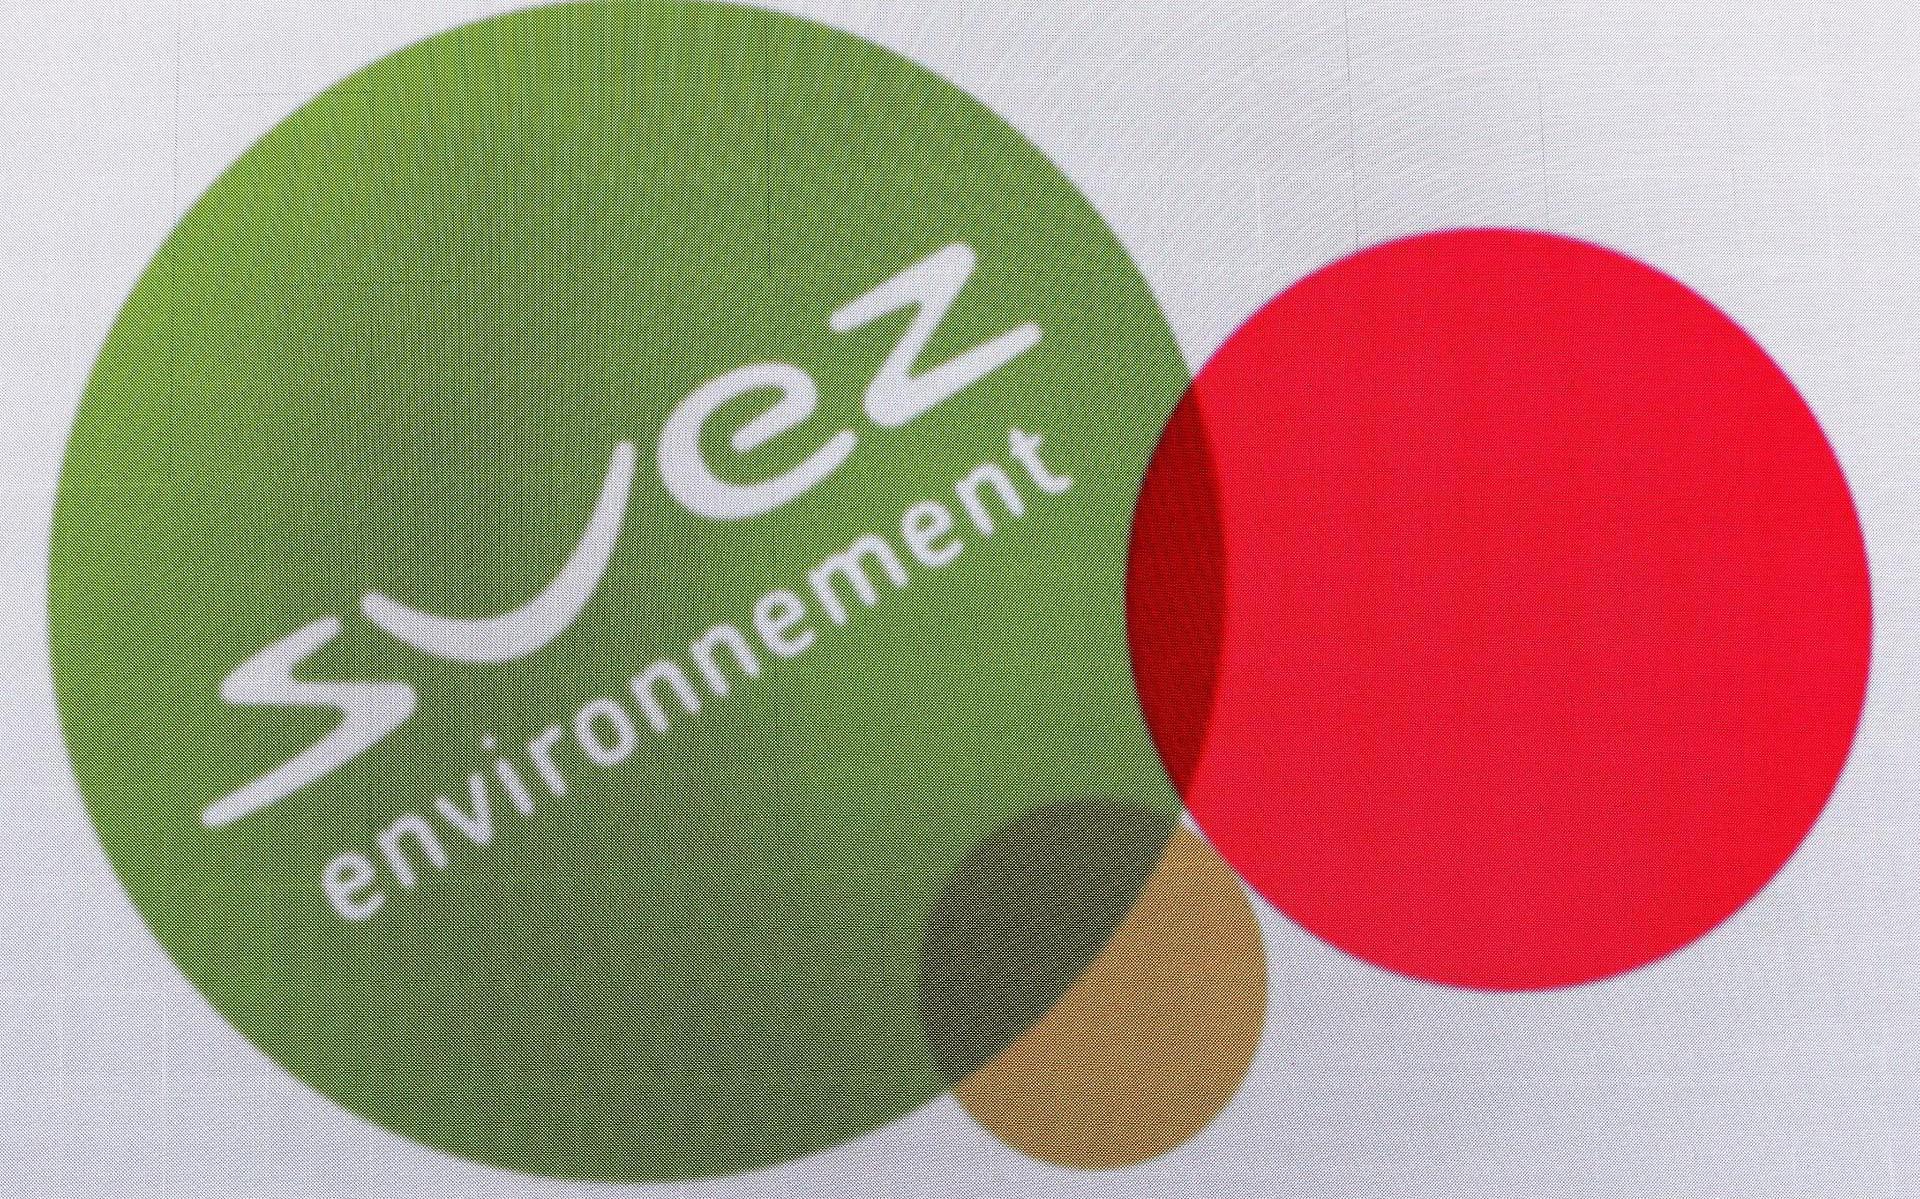 Frans nutsbedrijf Veolia sluit fusiedeal met Suez